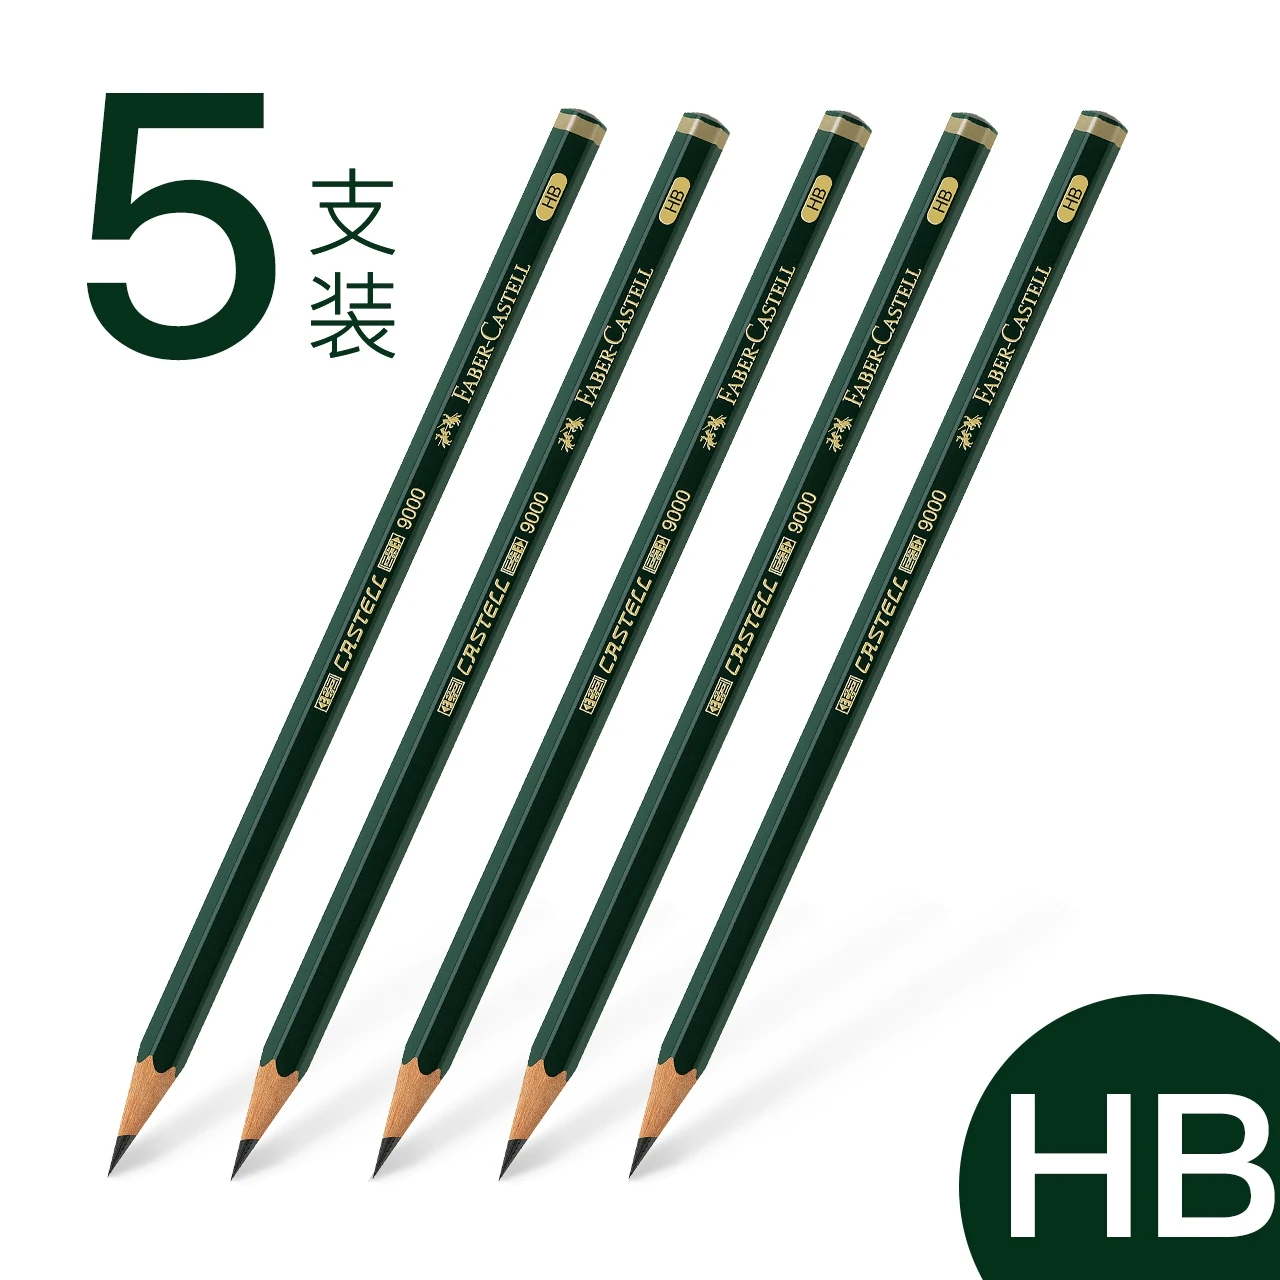 Faber-Castell 9000 Sketch Pencils B/2B/3B/4B/5B/6B/7B/8B/H/2H